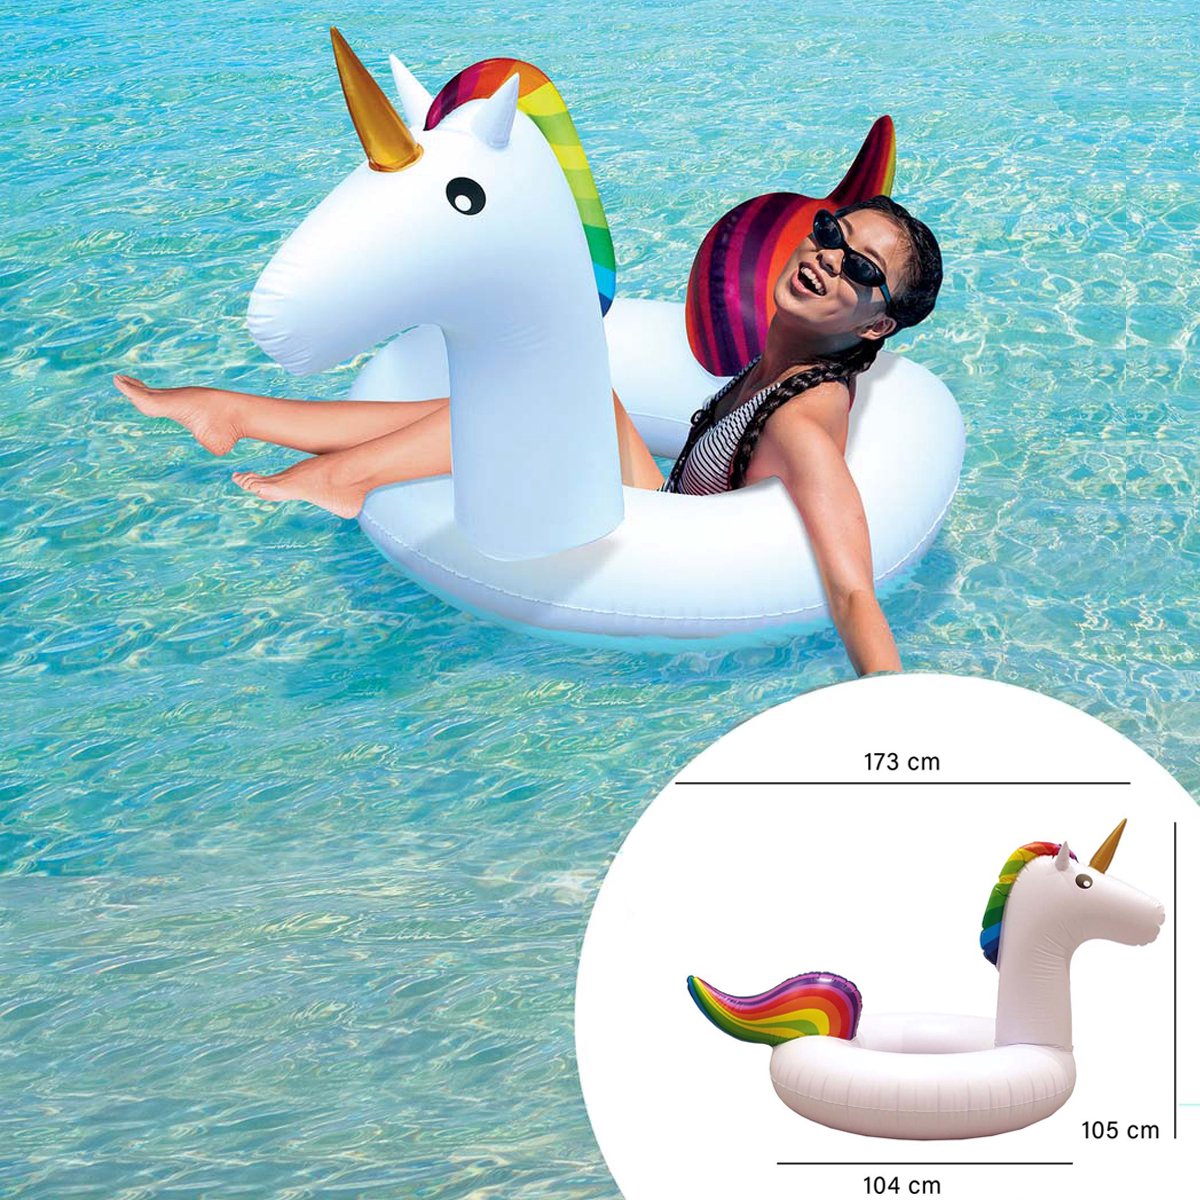 Opblaasbare Zwemband - Unicorn - 173 x 104 x 105 cm - 50 kg - Zwemring - Opblaasband - Opblaasbaar Zwembandspeelgoed - Merkloos